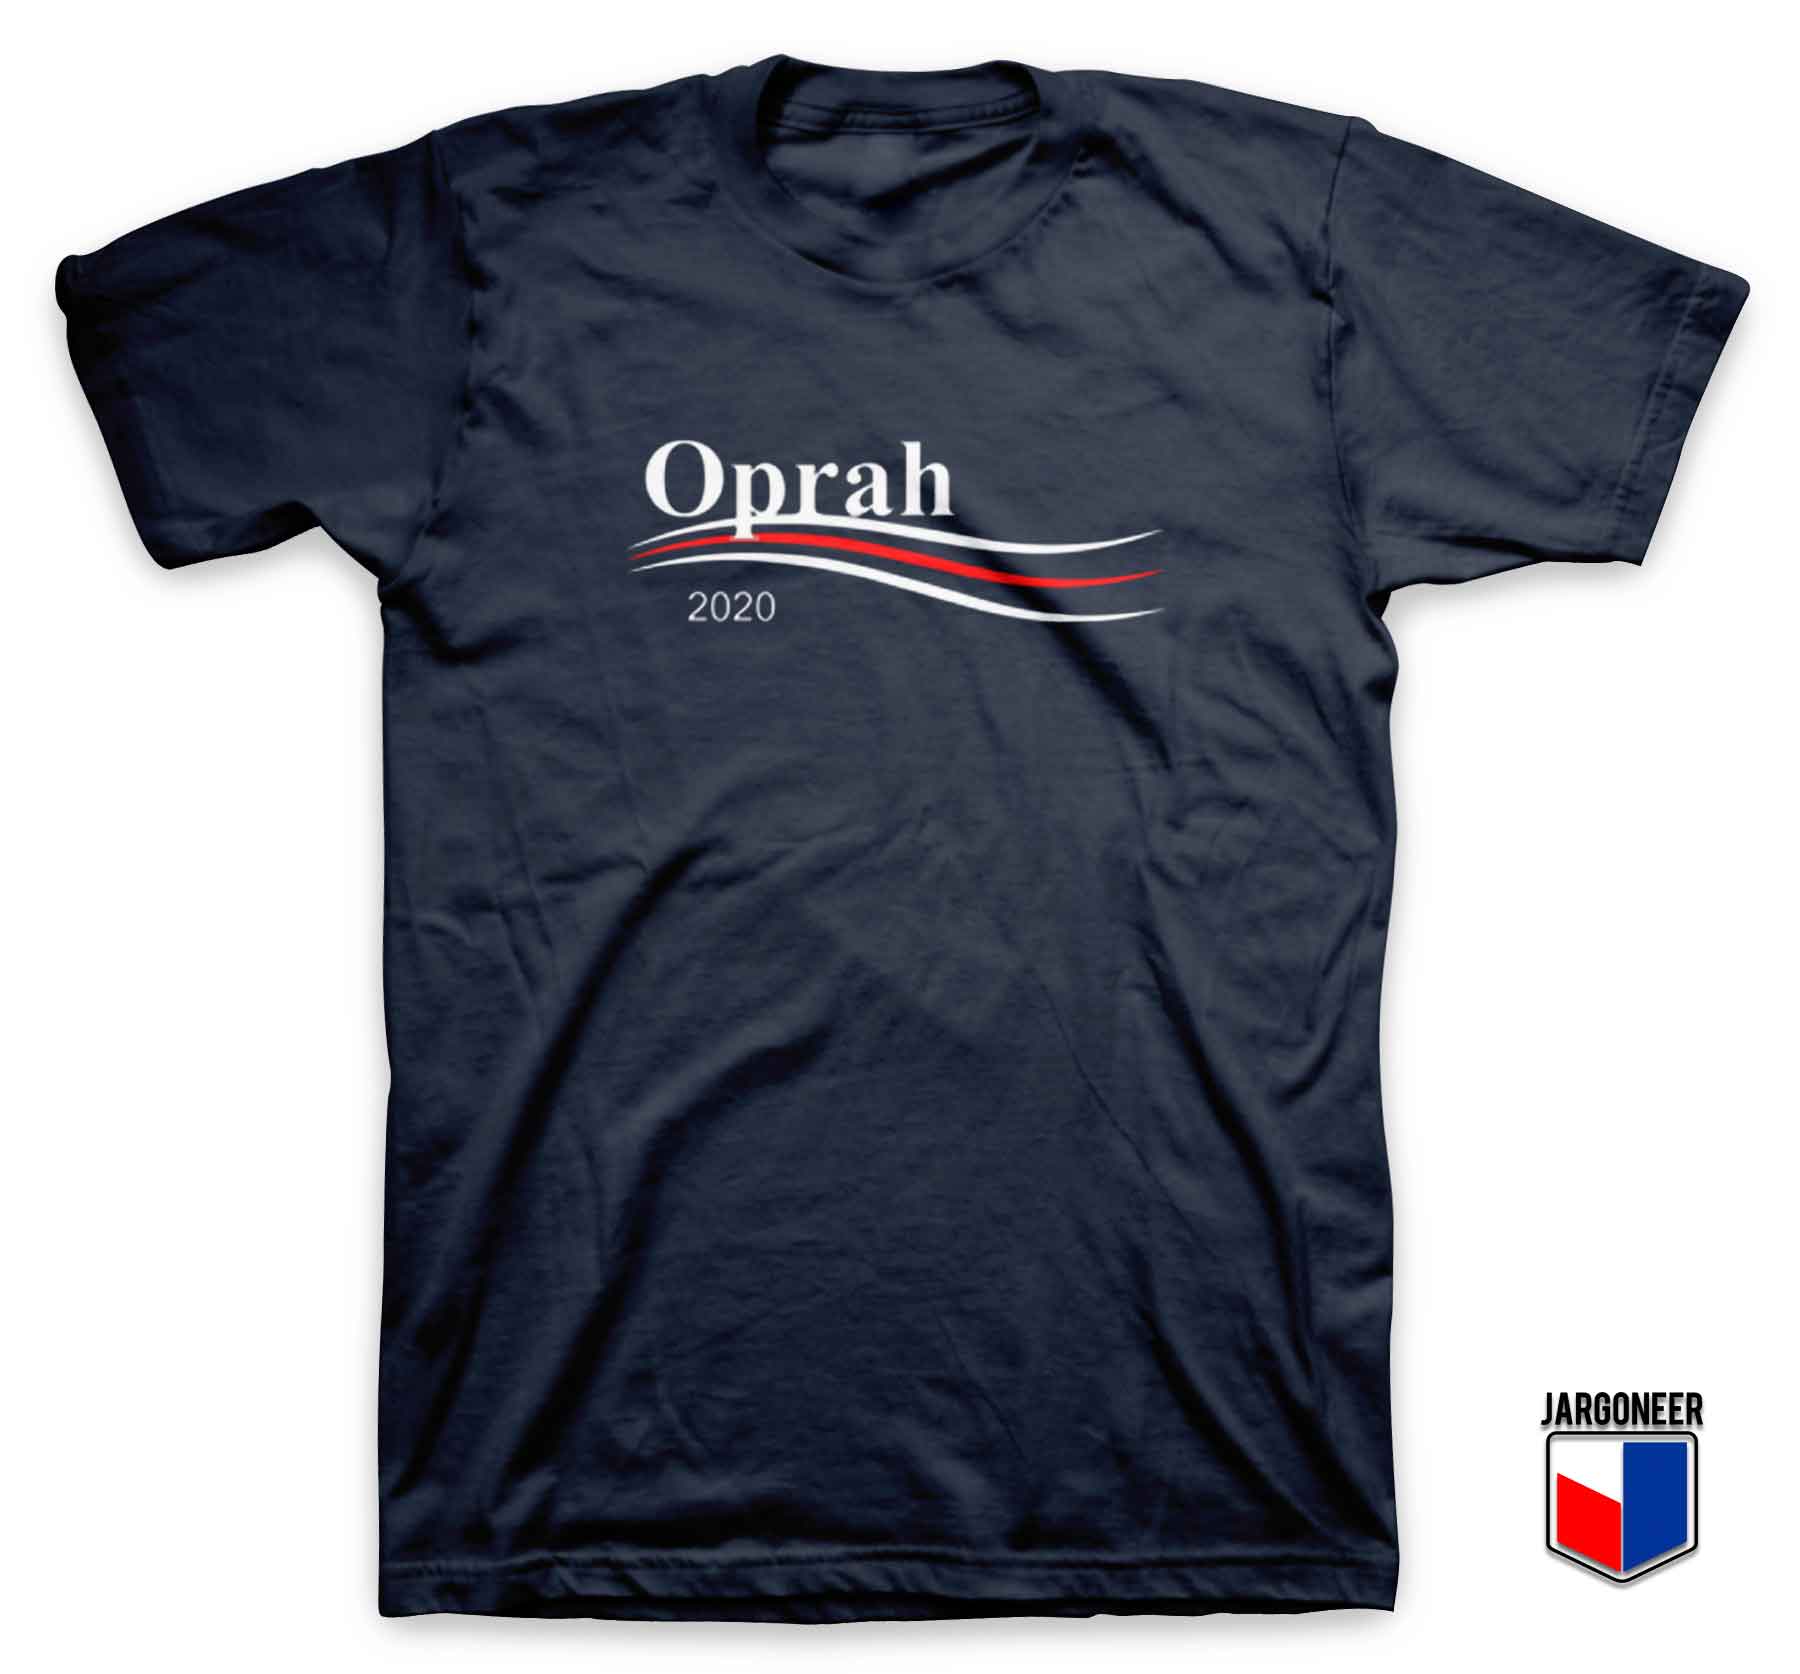 Oprah For President - Shop Unique Graphic Cool Shirt Designs